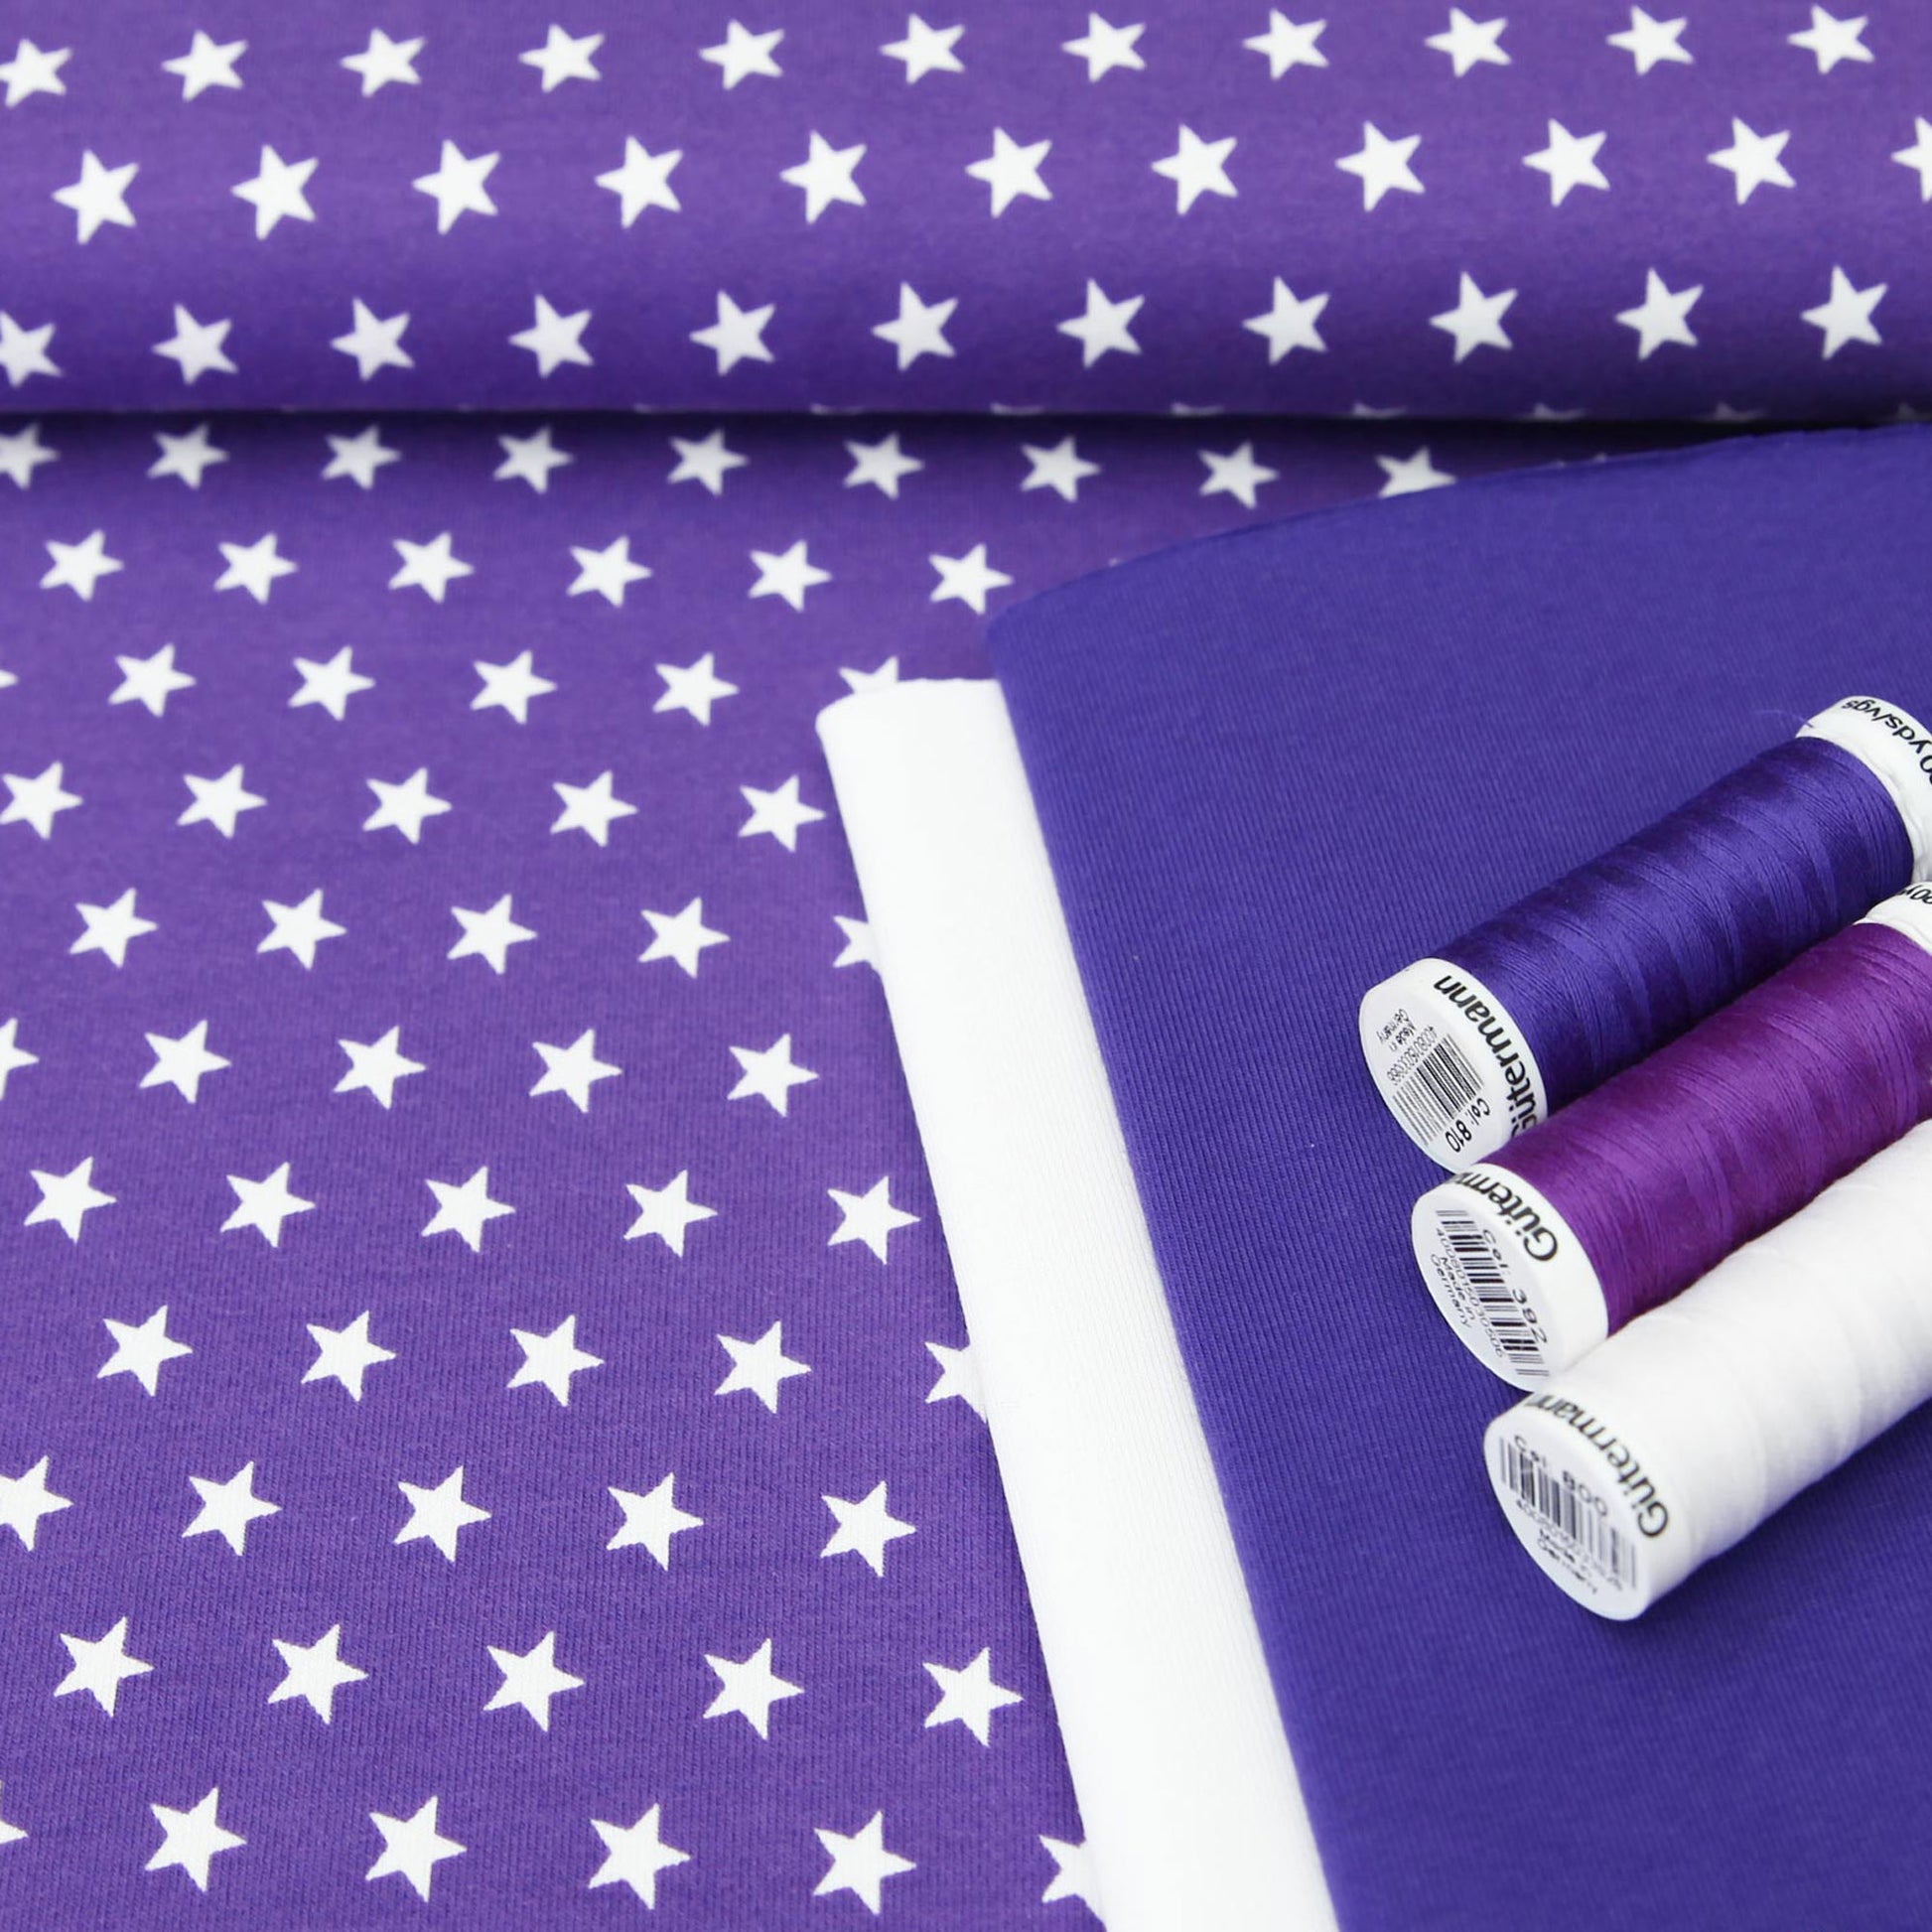 Baumwolljersey "weiße 1cm Sterne auf violett" - Jersey Stoff SterneJersey BedrucktStoffe Kudellino